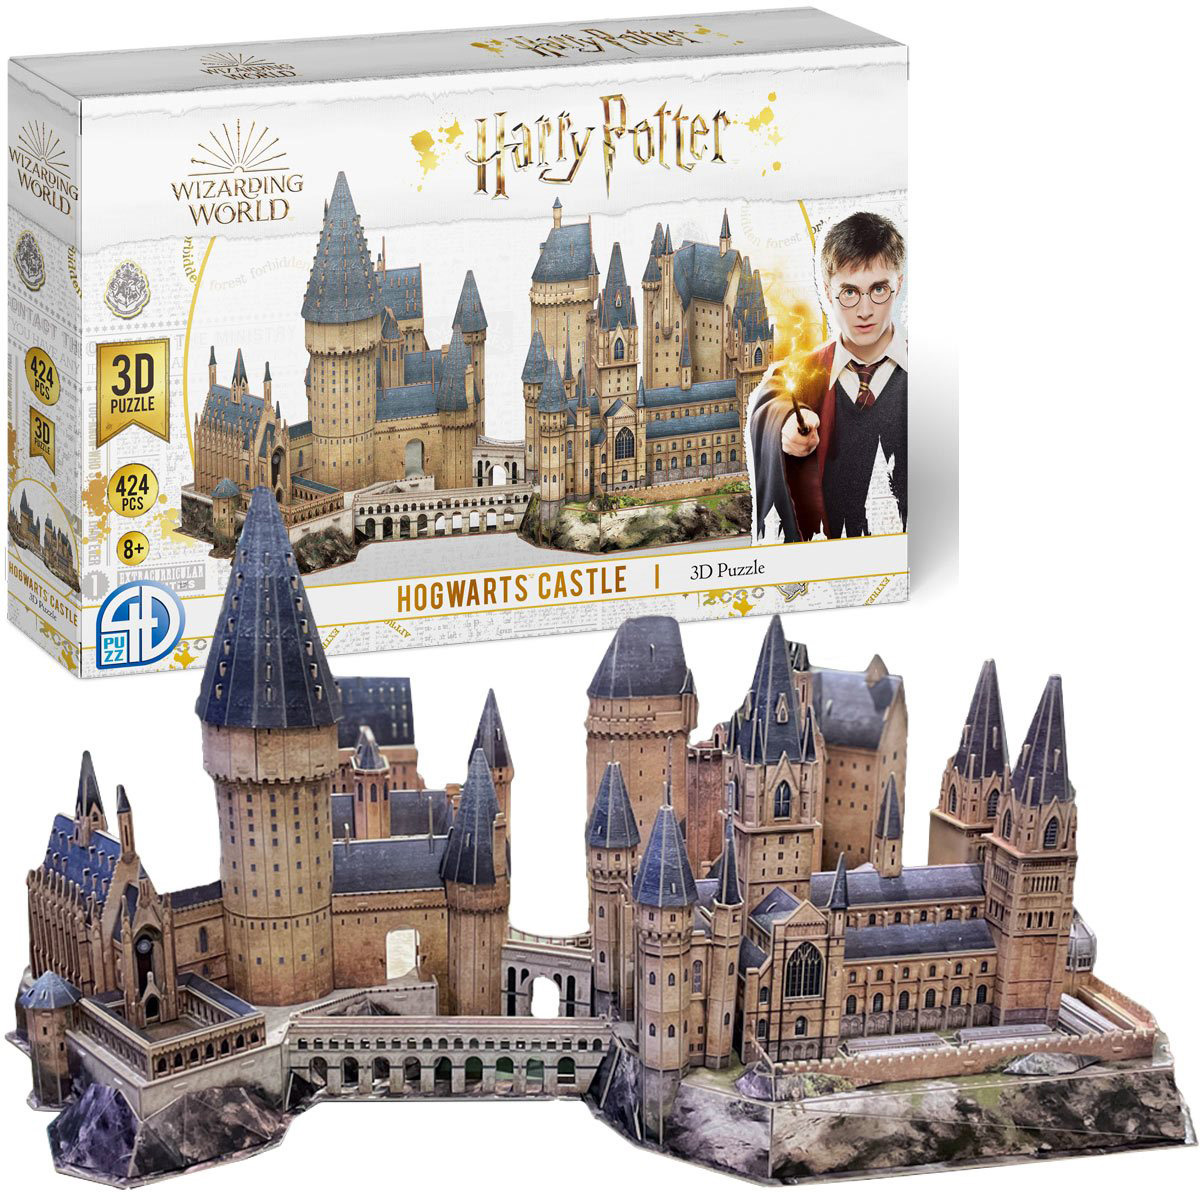 3D Harry Potter Hogwarts Large Castle Set Castle Jigsaw Puzzle